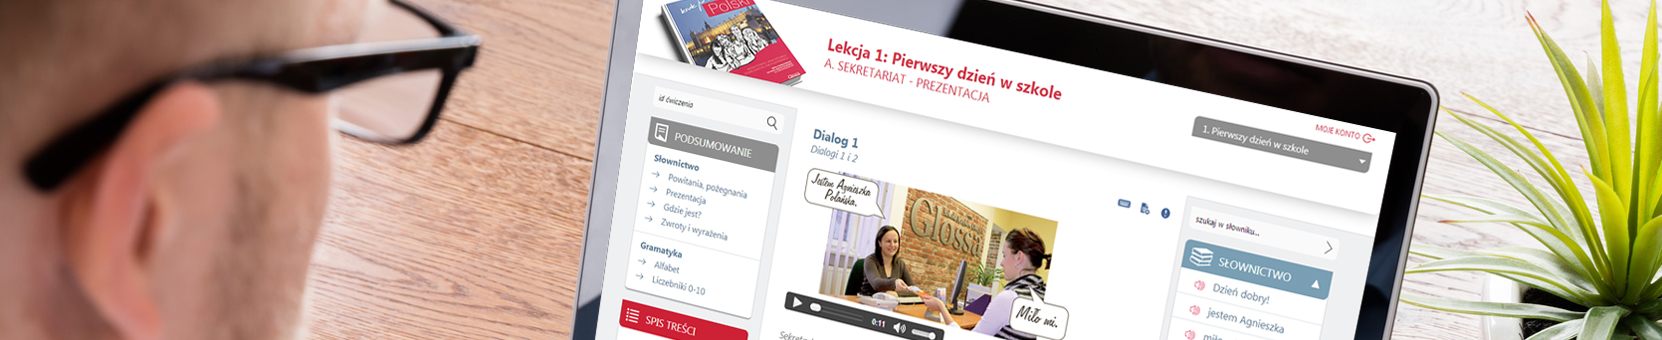 Kursy języka polskiego online